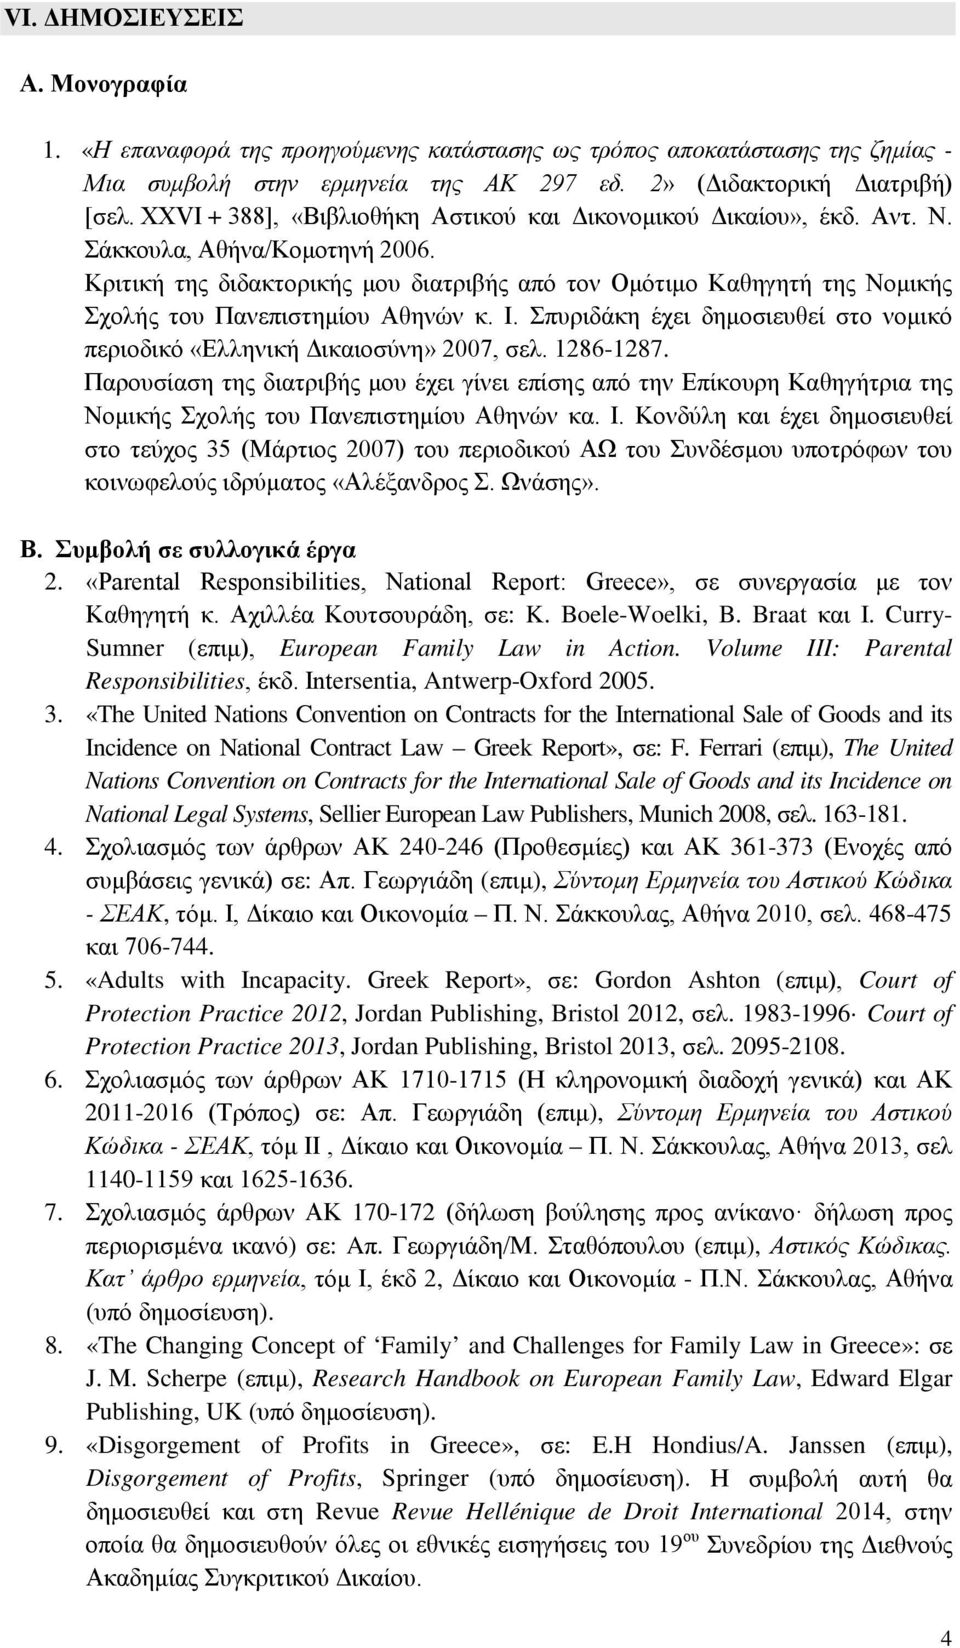 Κριτική της διδακτορικής μου διατριβής από τον Ομότιμο Καθηγητή της Νομικής Σχολής του Πανεπιστημίου Αθηνών κ. Ι. Σπυριδάκη έχει δημοσιευθεί στο νομικό περιοδικό «Ελληνική Δικαιοσύνη» 2007, σελ.